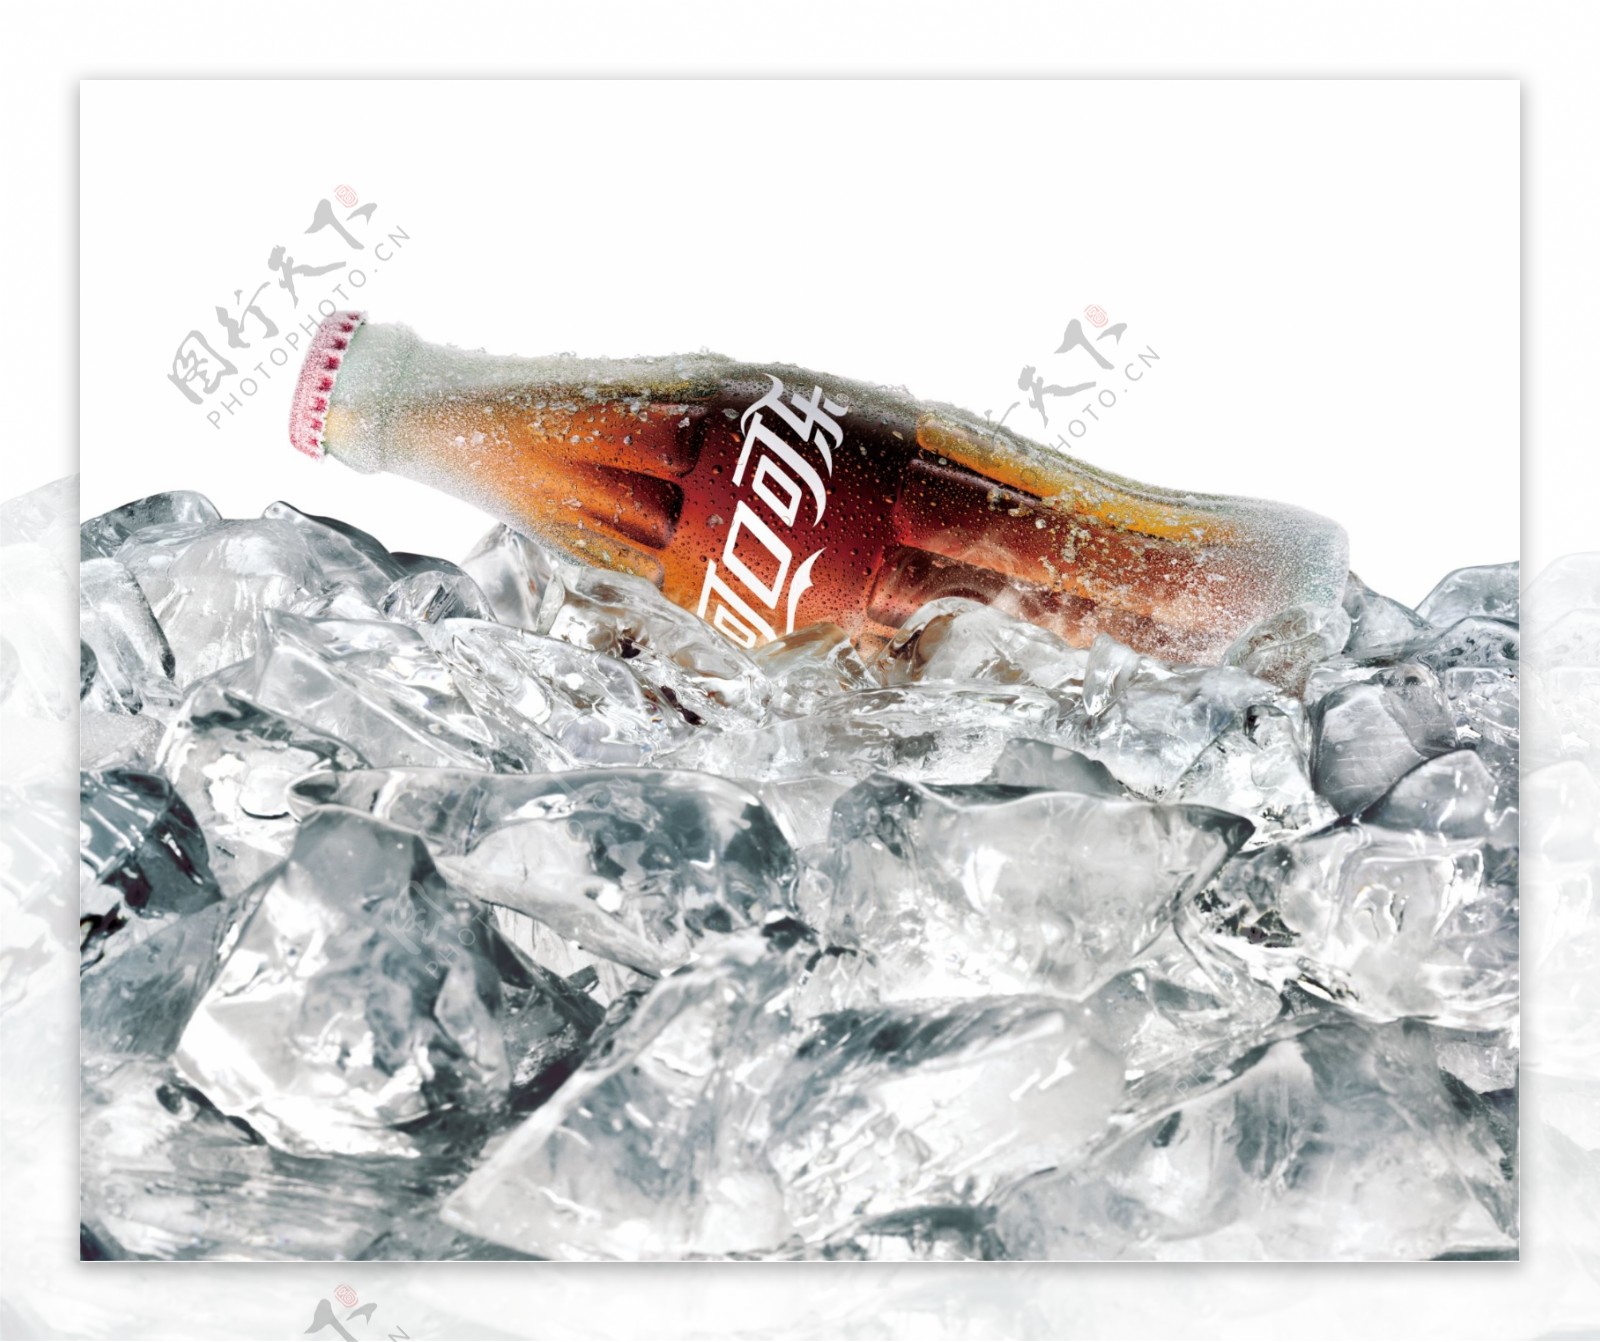 可口可乐平面创意广告玻璃瓶